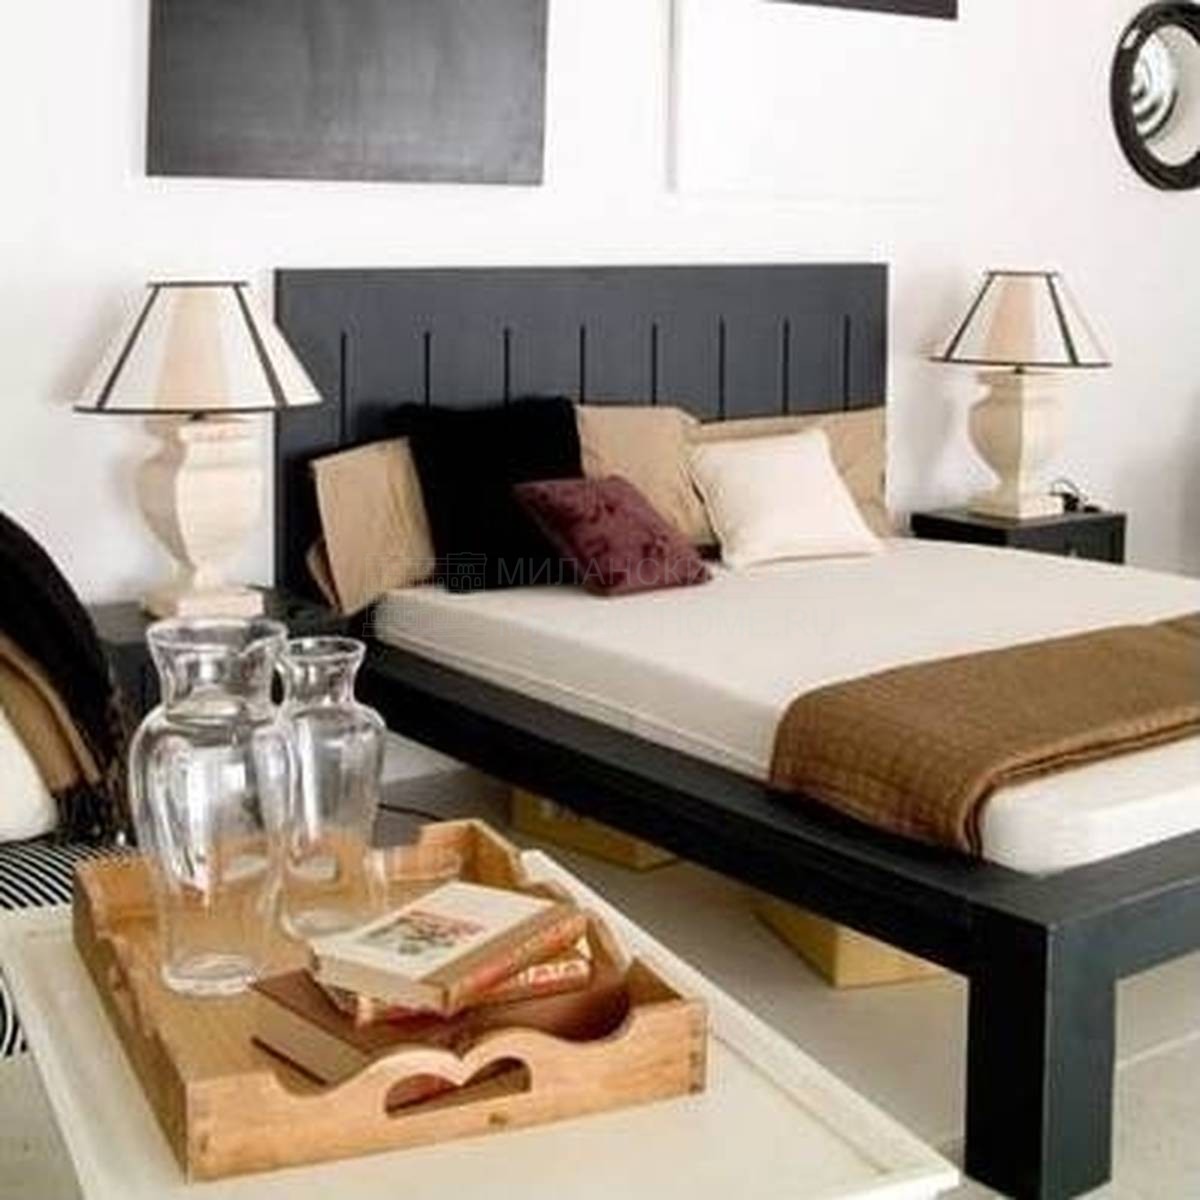 Кровать с деревянным изголовьем DO-476 bed из Испании фабрики GUADARTE